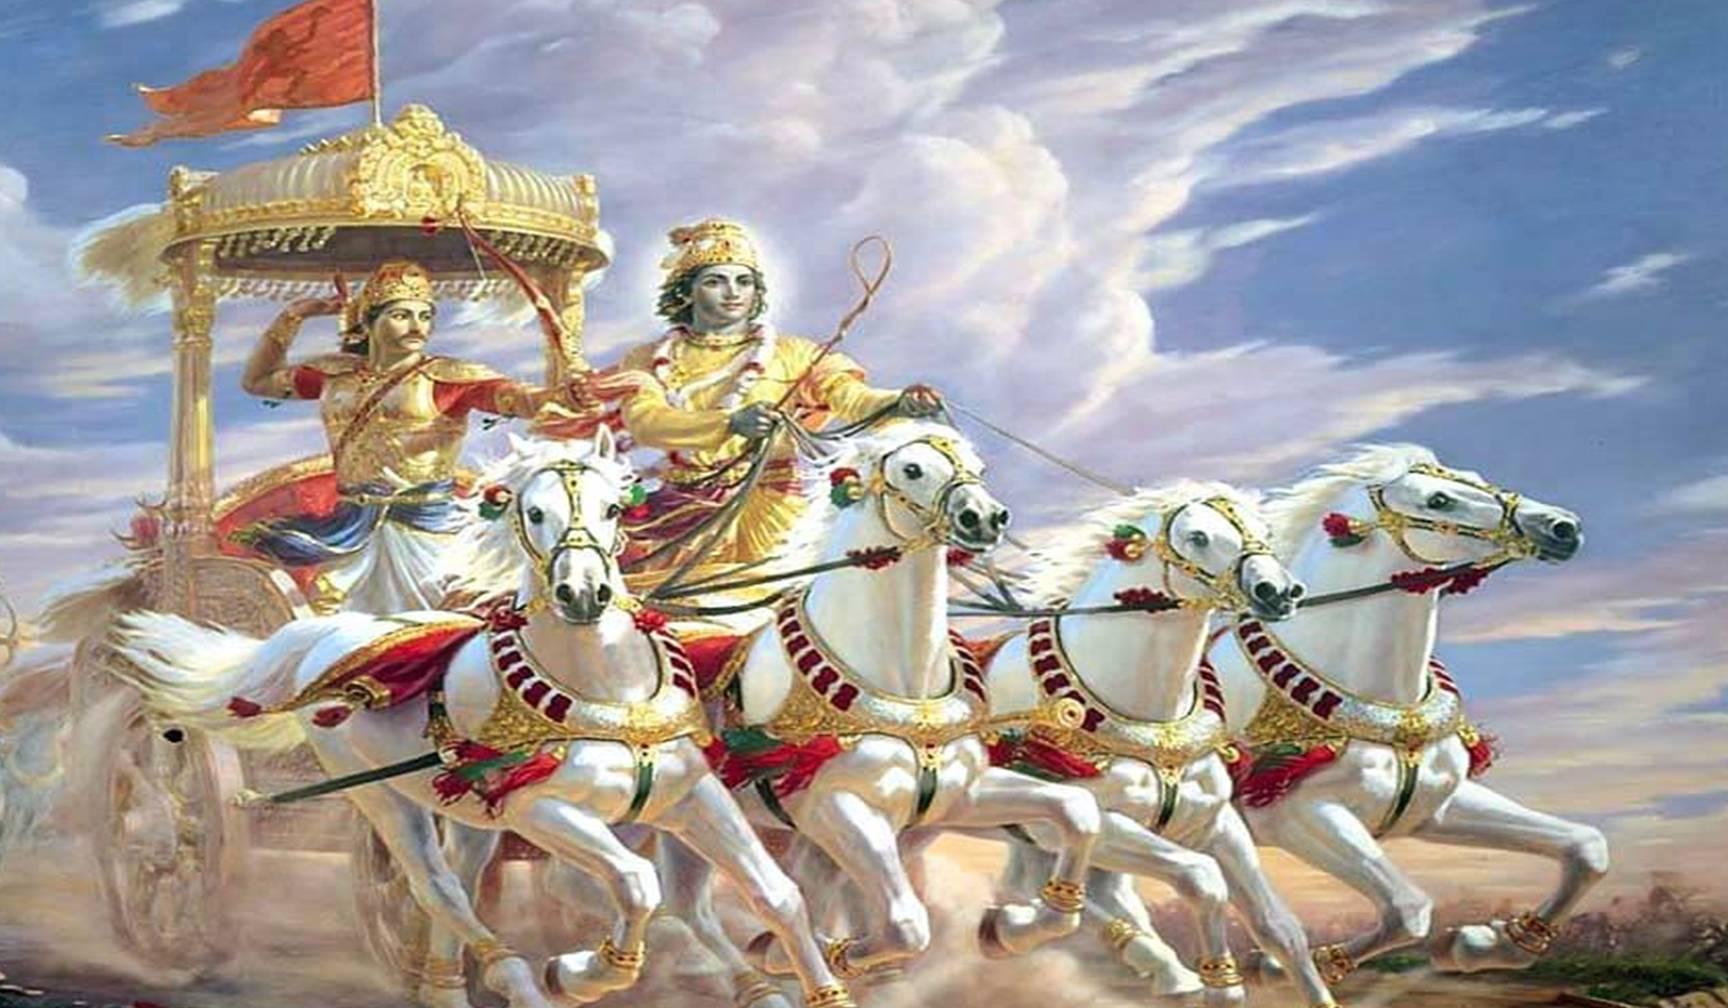 भगवान कृष्ण ने महाभारत के युद्ध में अर्जुन के प्राणों को 4 बार बचाया था,जानें आप भी